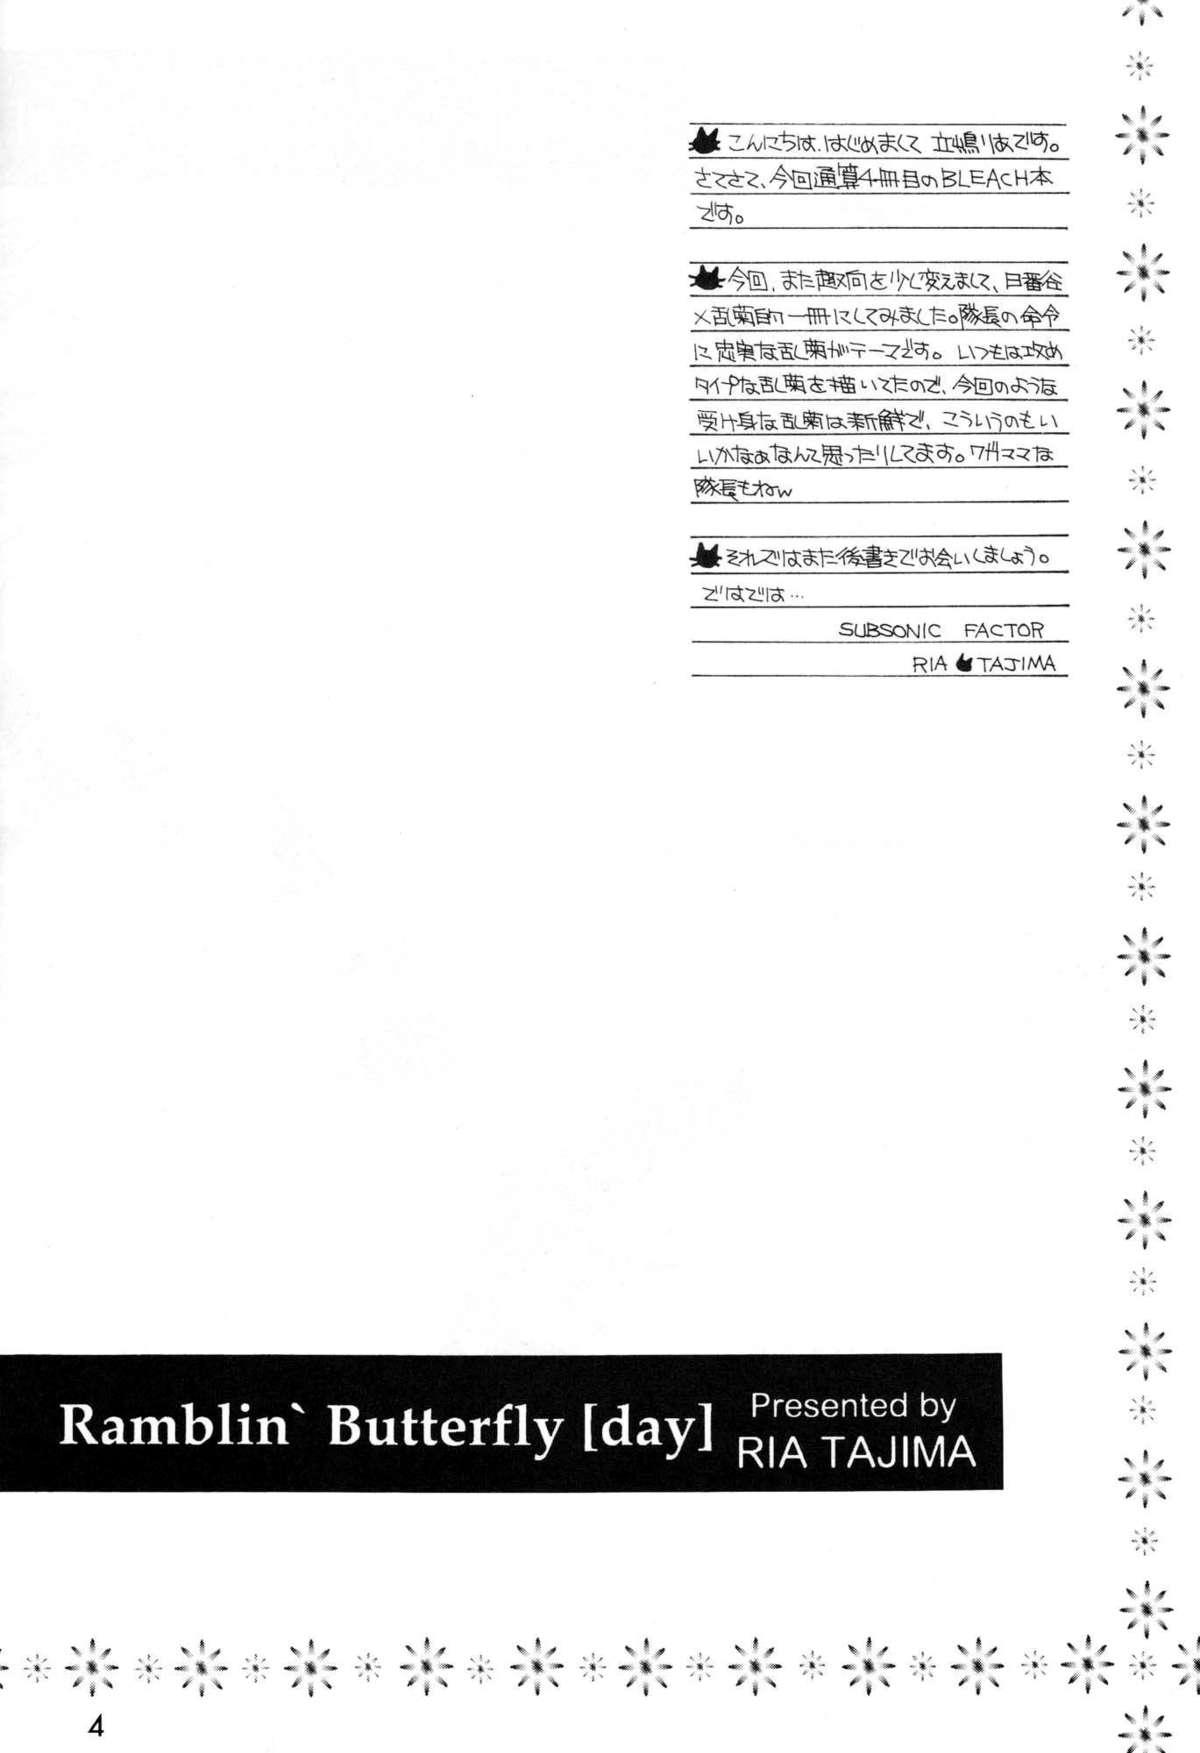 Ramblin' Butterfly 2